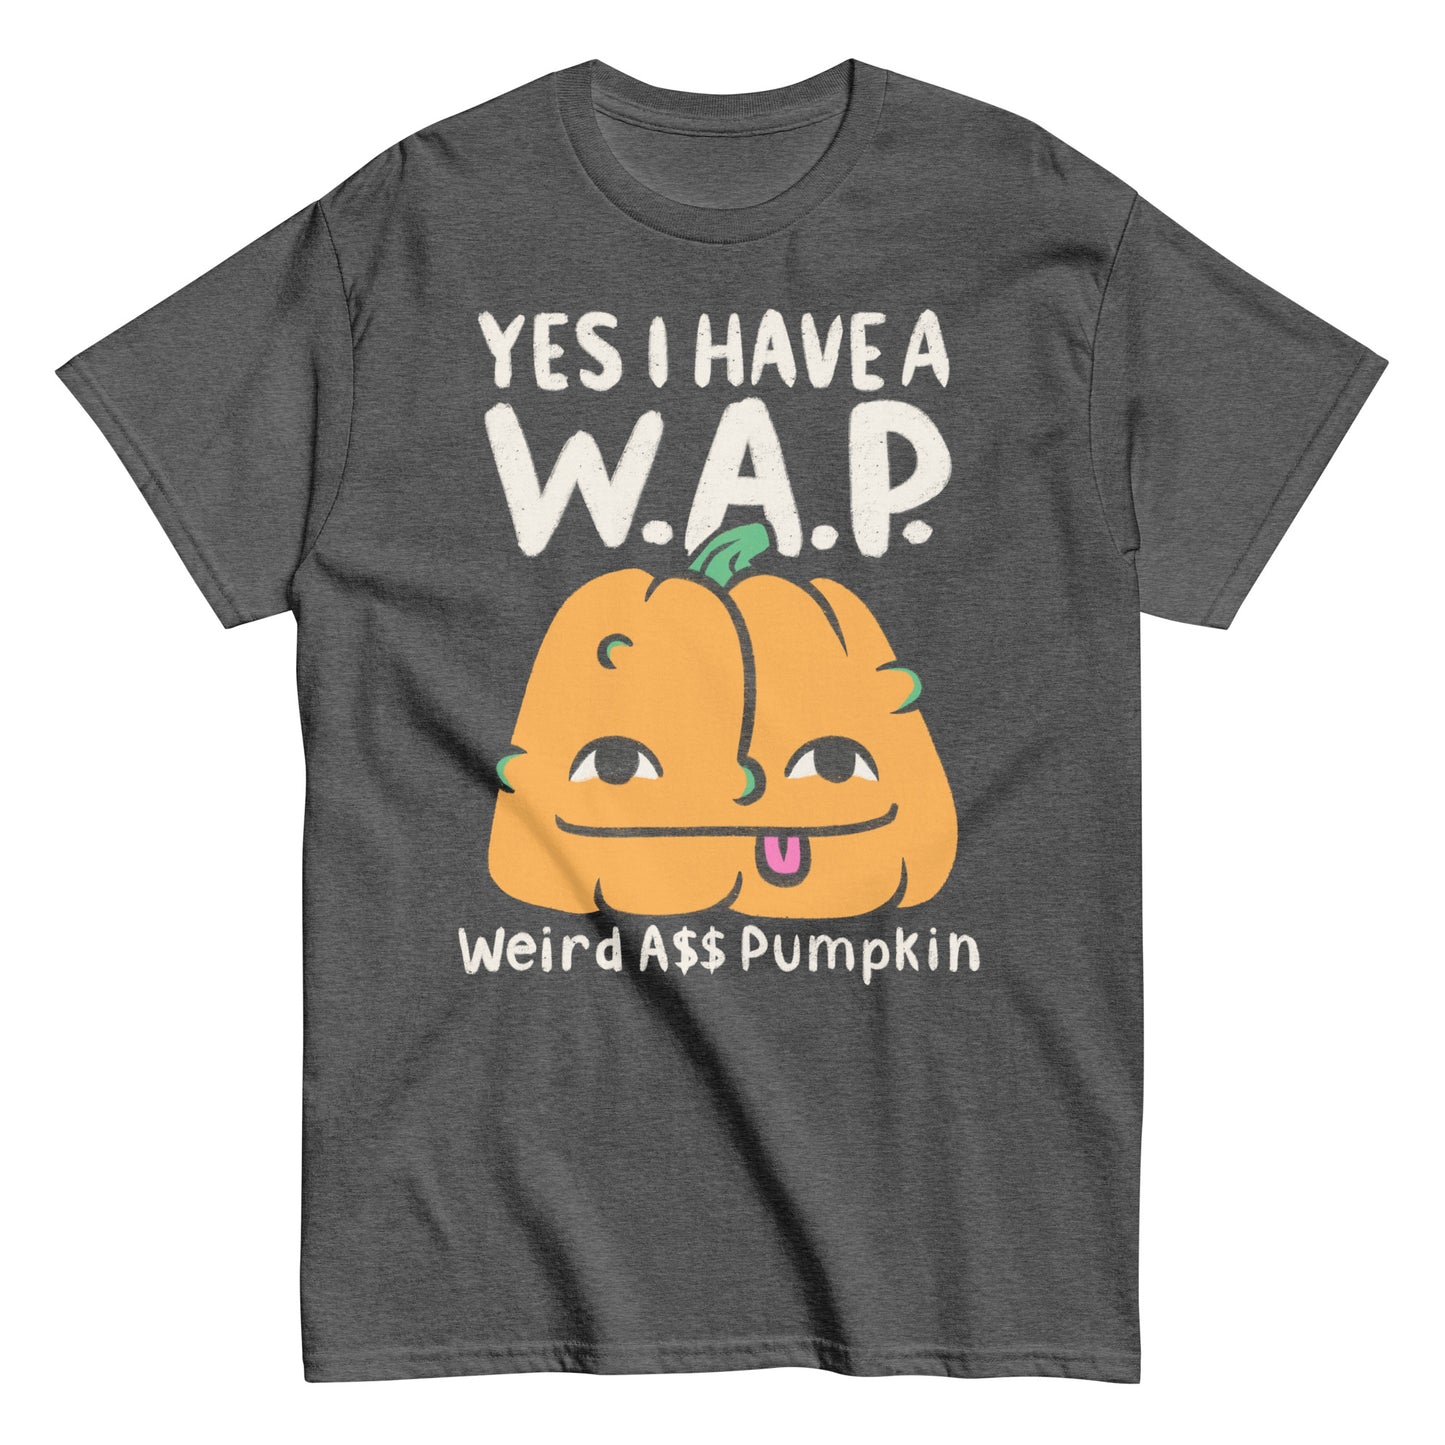 Yes I have a WAP - Weird A$$ Pumpkin Funny Halloween T-Shirt